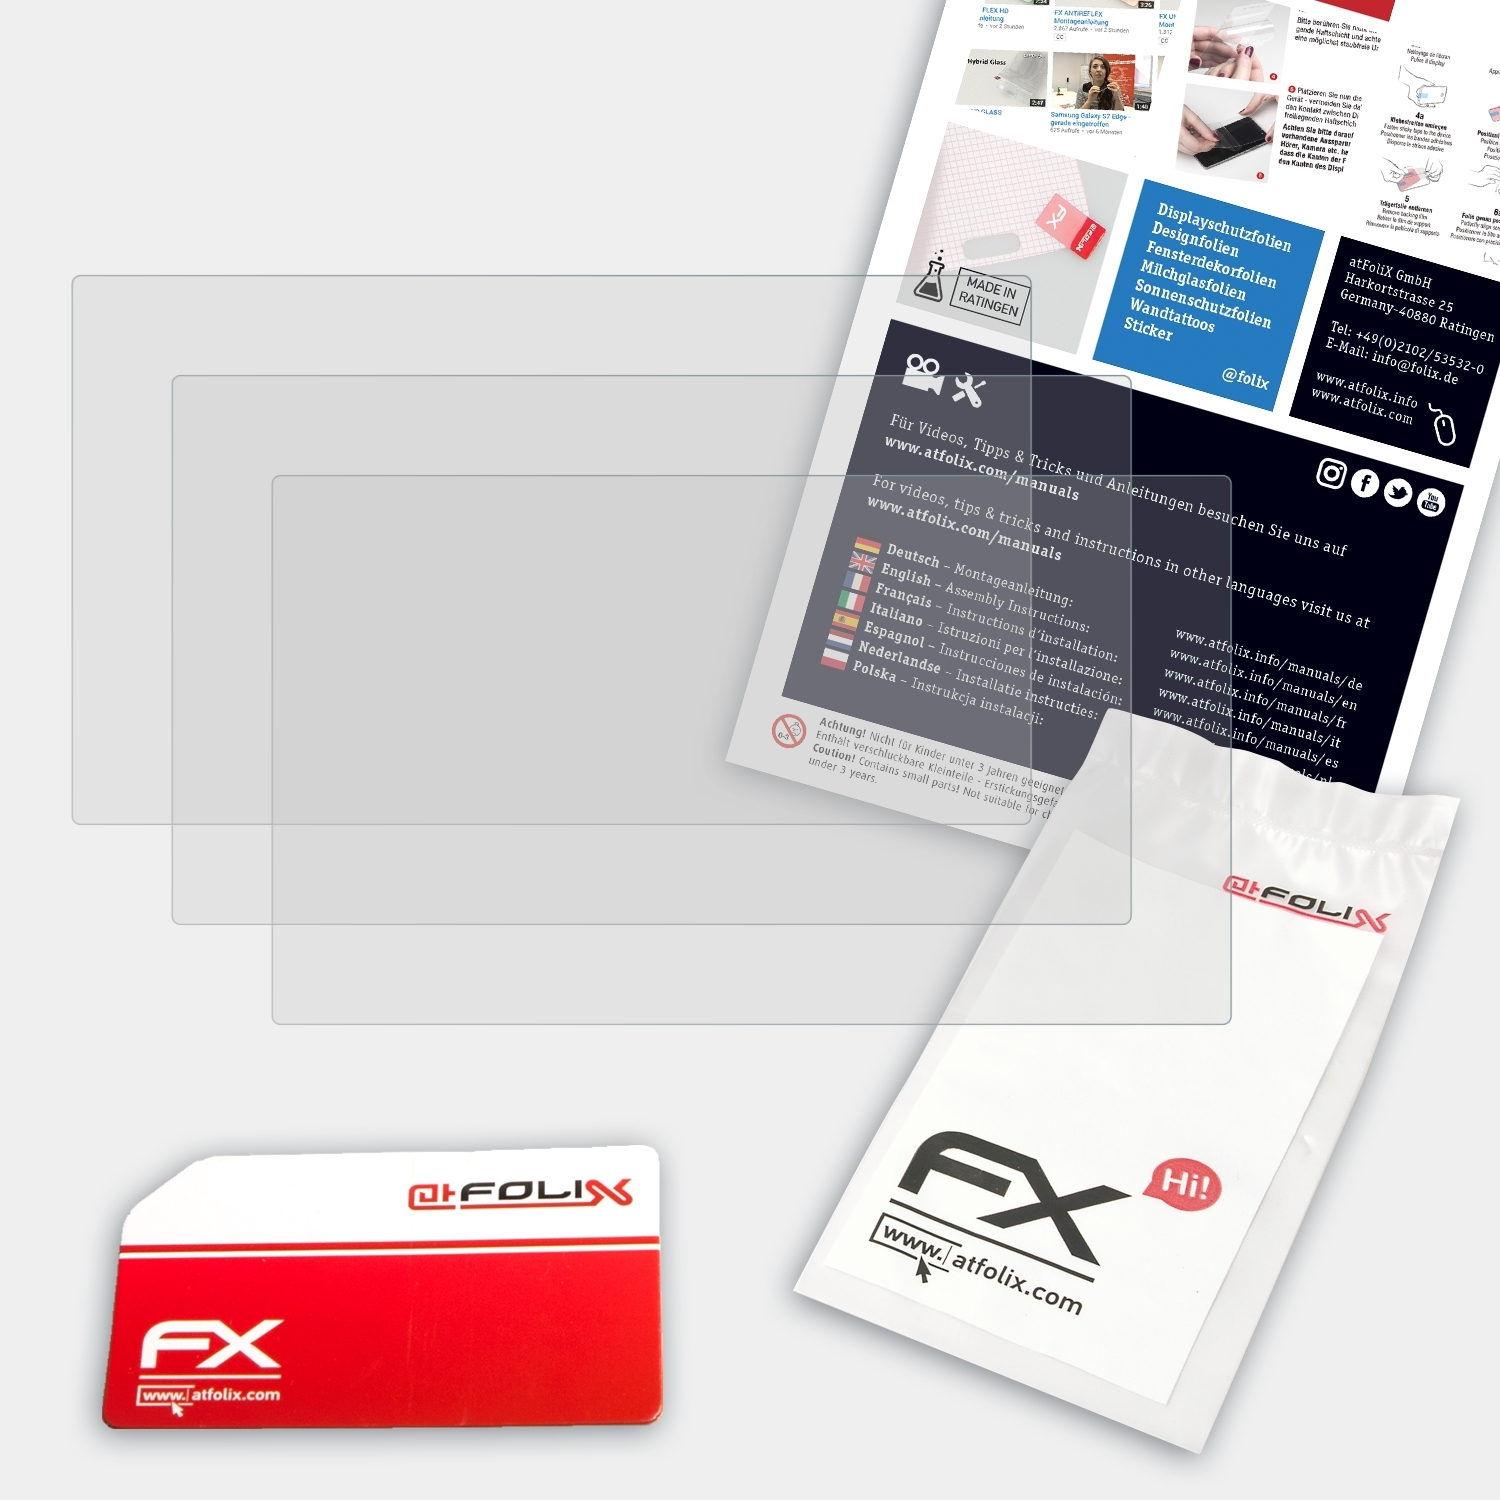 FX-Antireflex 3x Sony ATFOLIX Displayschutz(für NEX-VG30EH)